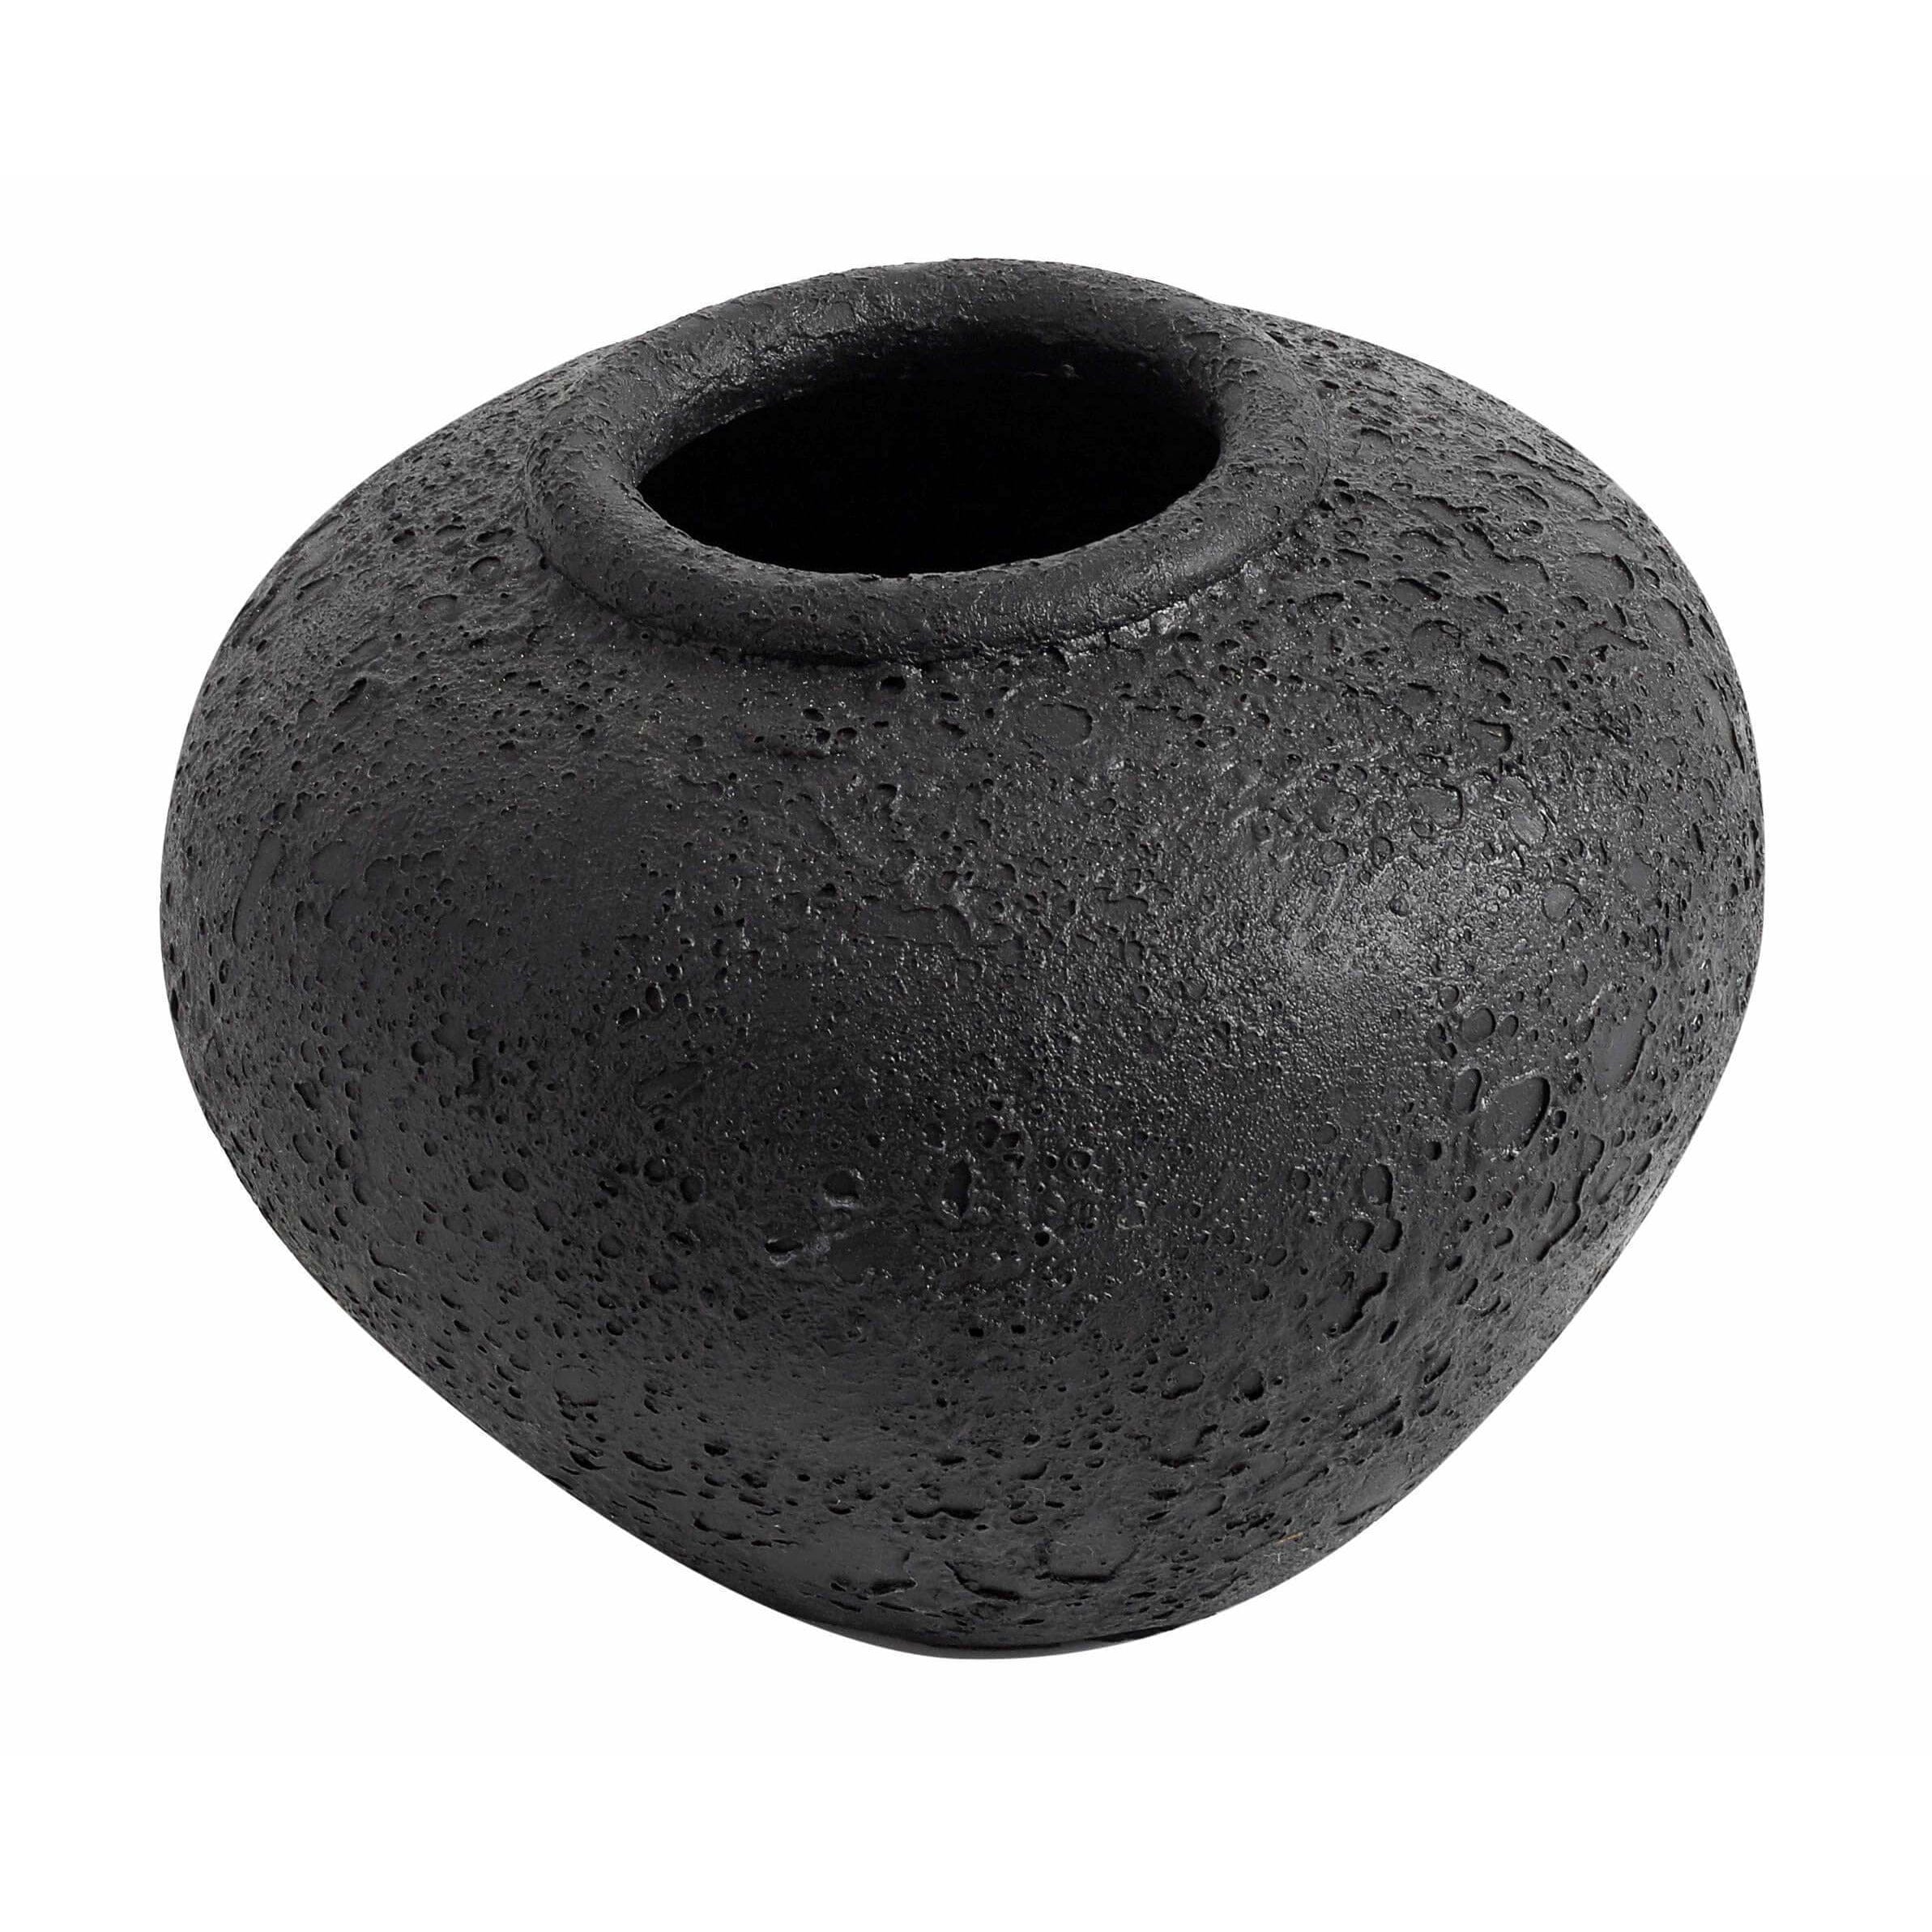 Muubs Luna Vase Black, 18cm